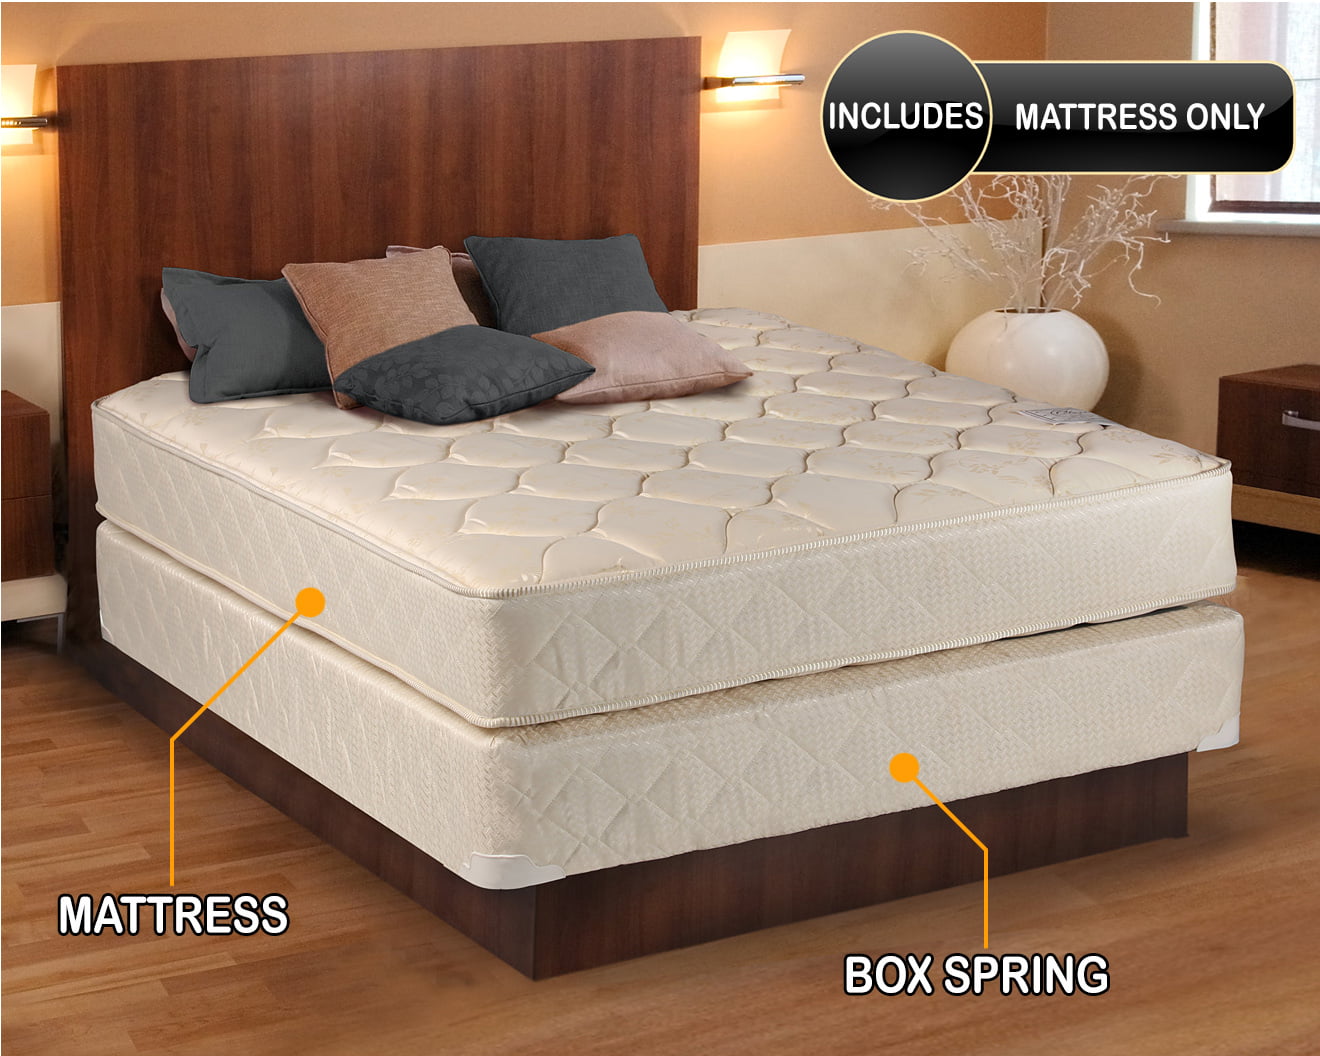 firm twin mattress only